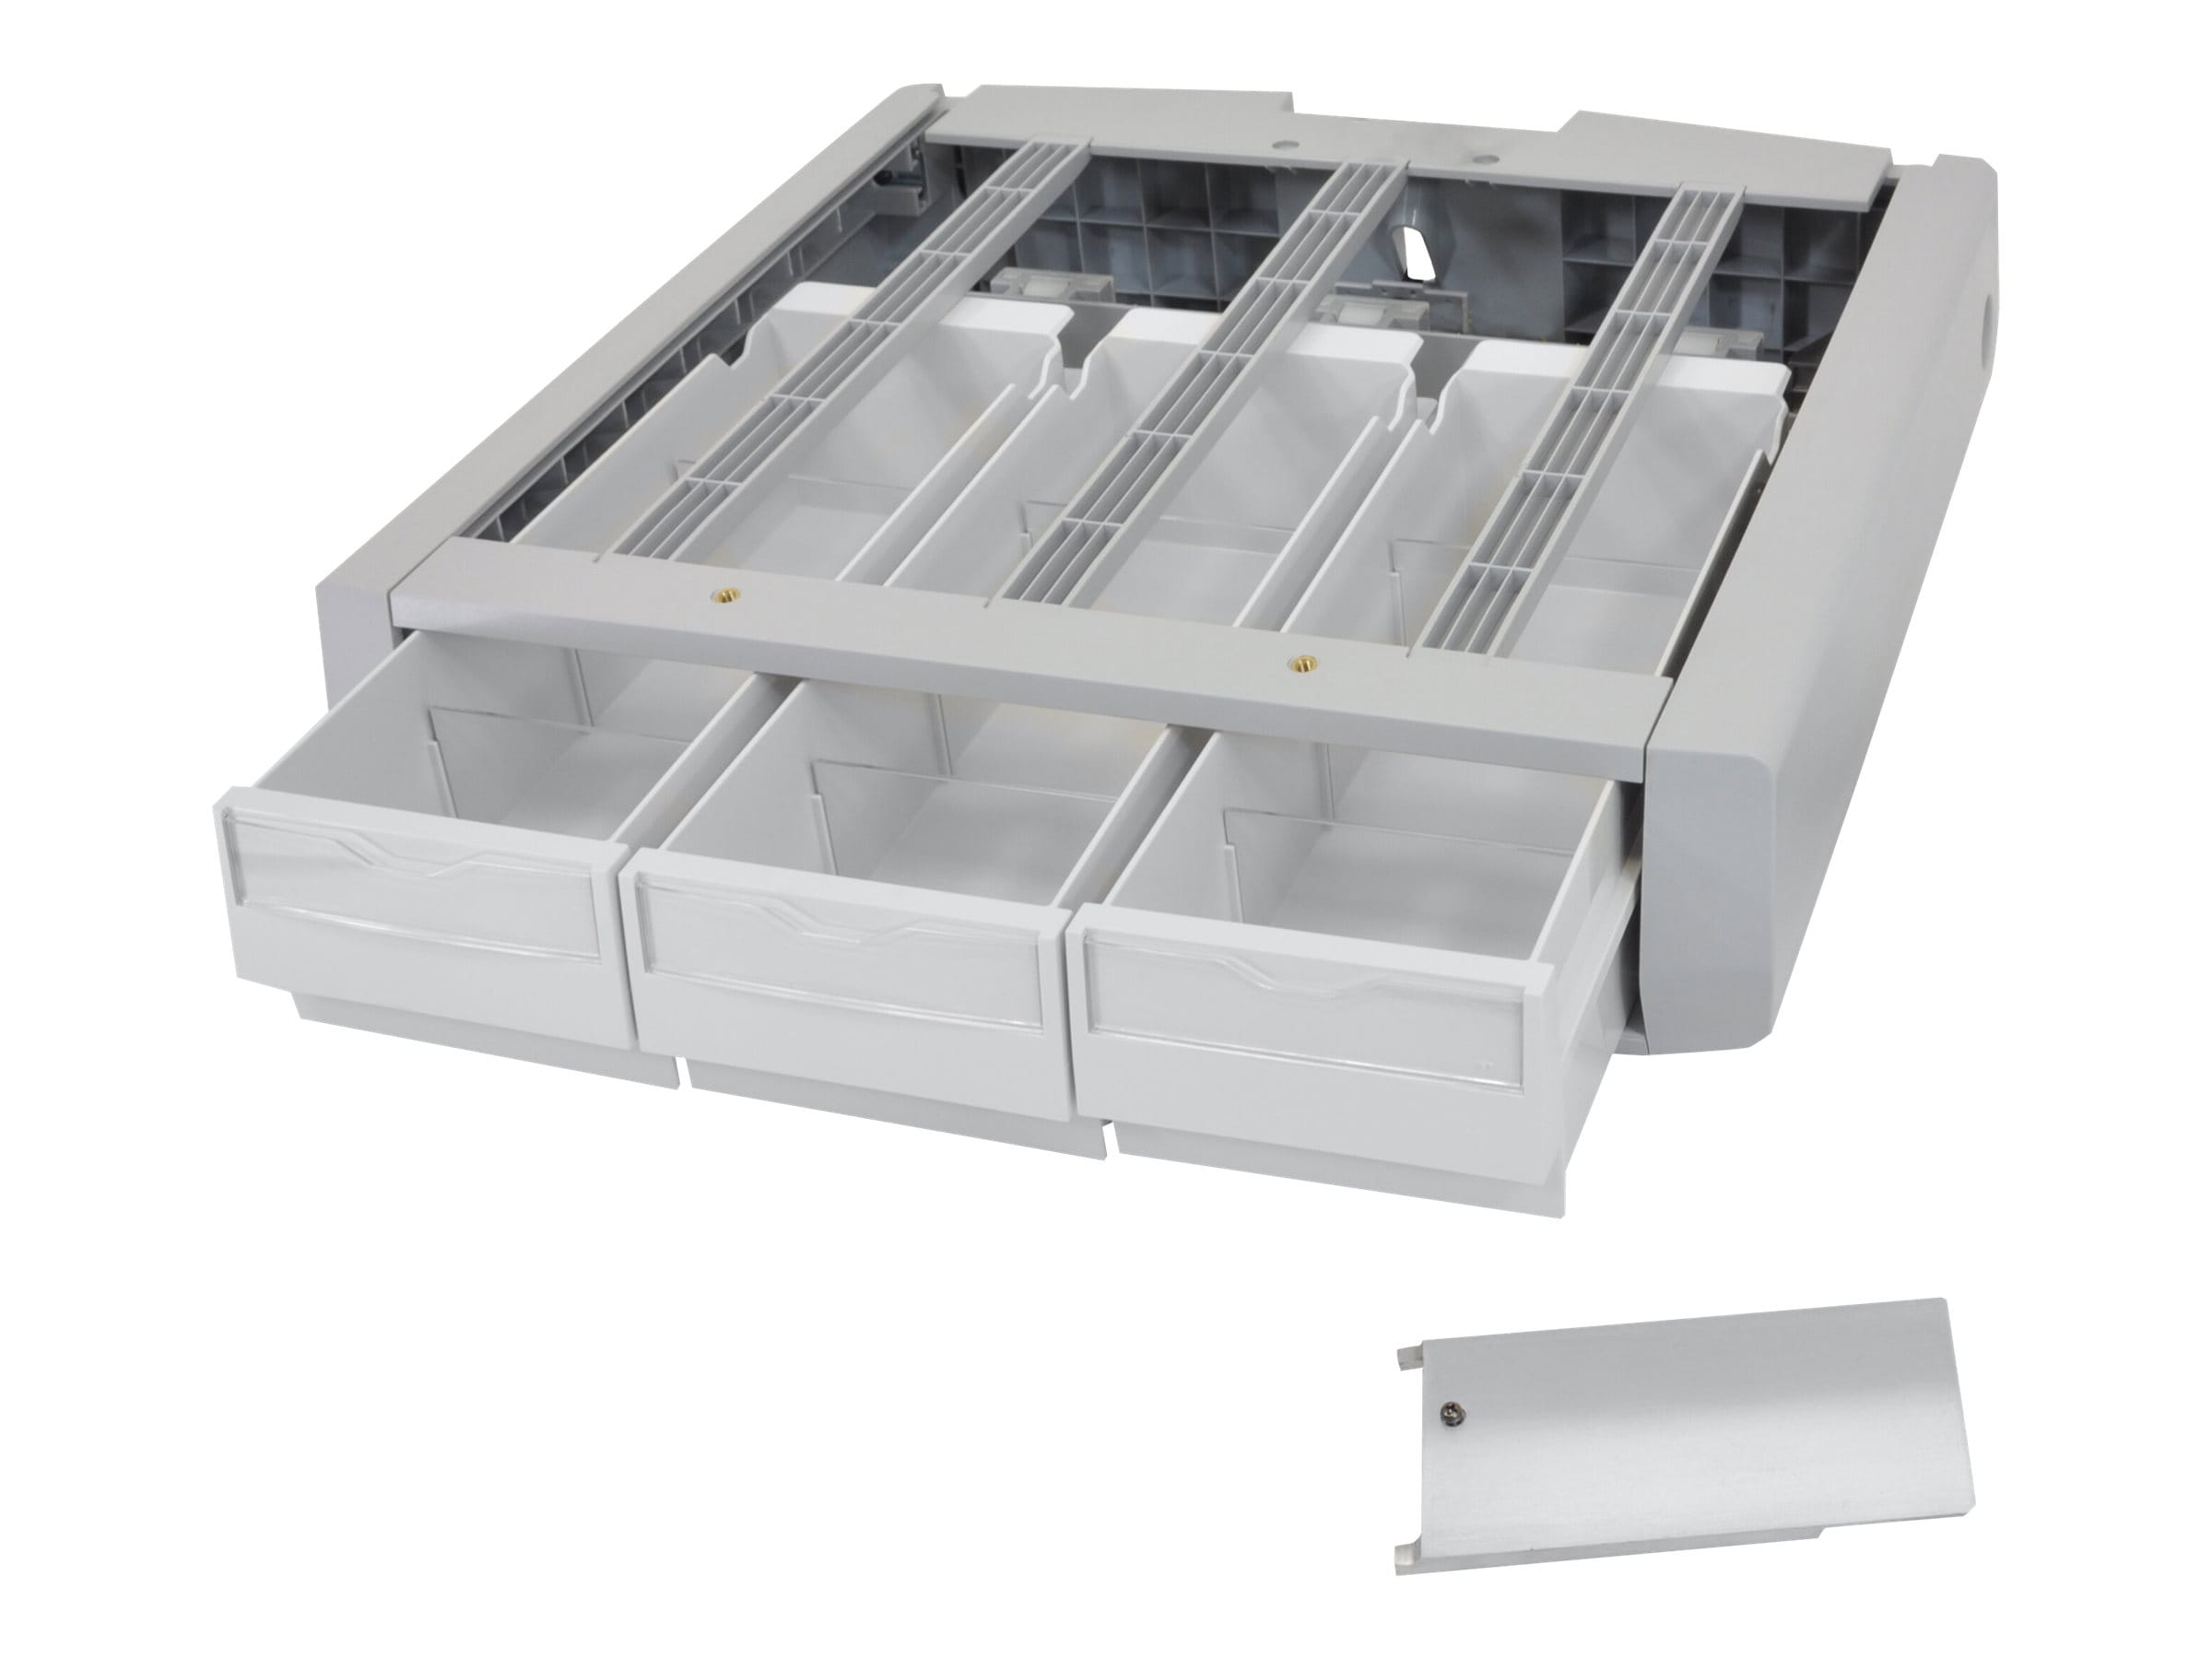 Ergotron Supplemental Storage Drawer, Triple - Montagekomponente (Auszugsmodul)